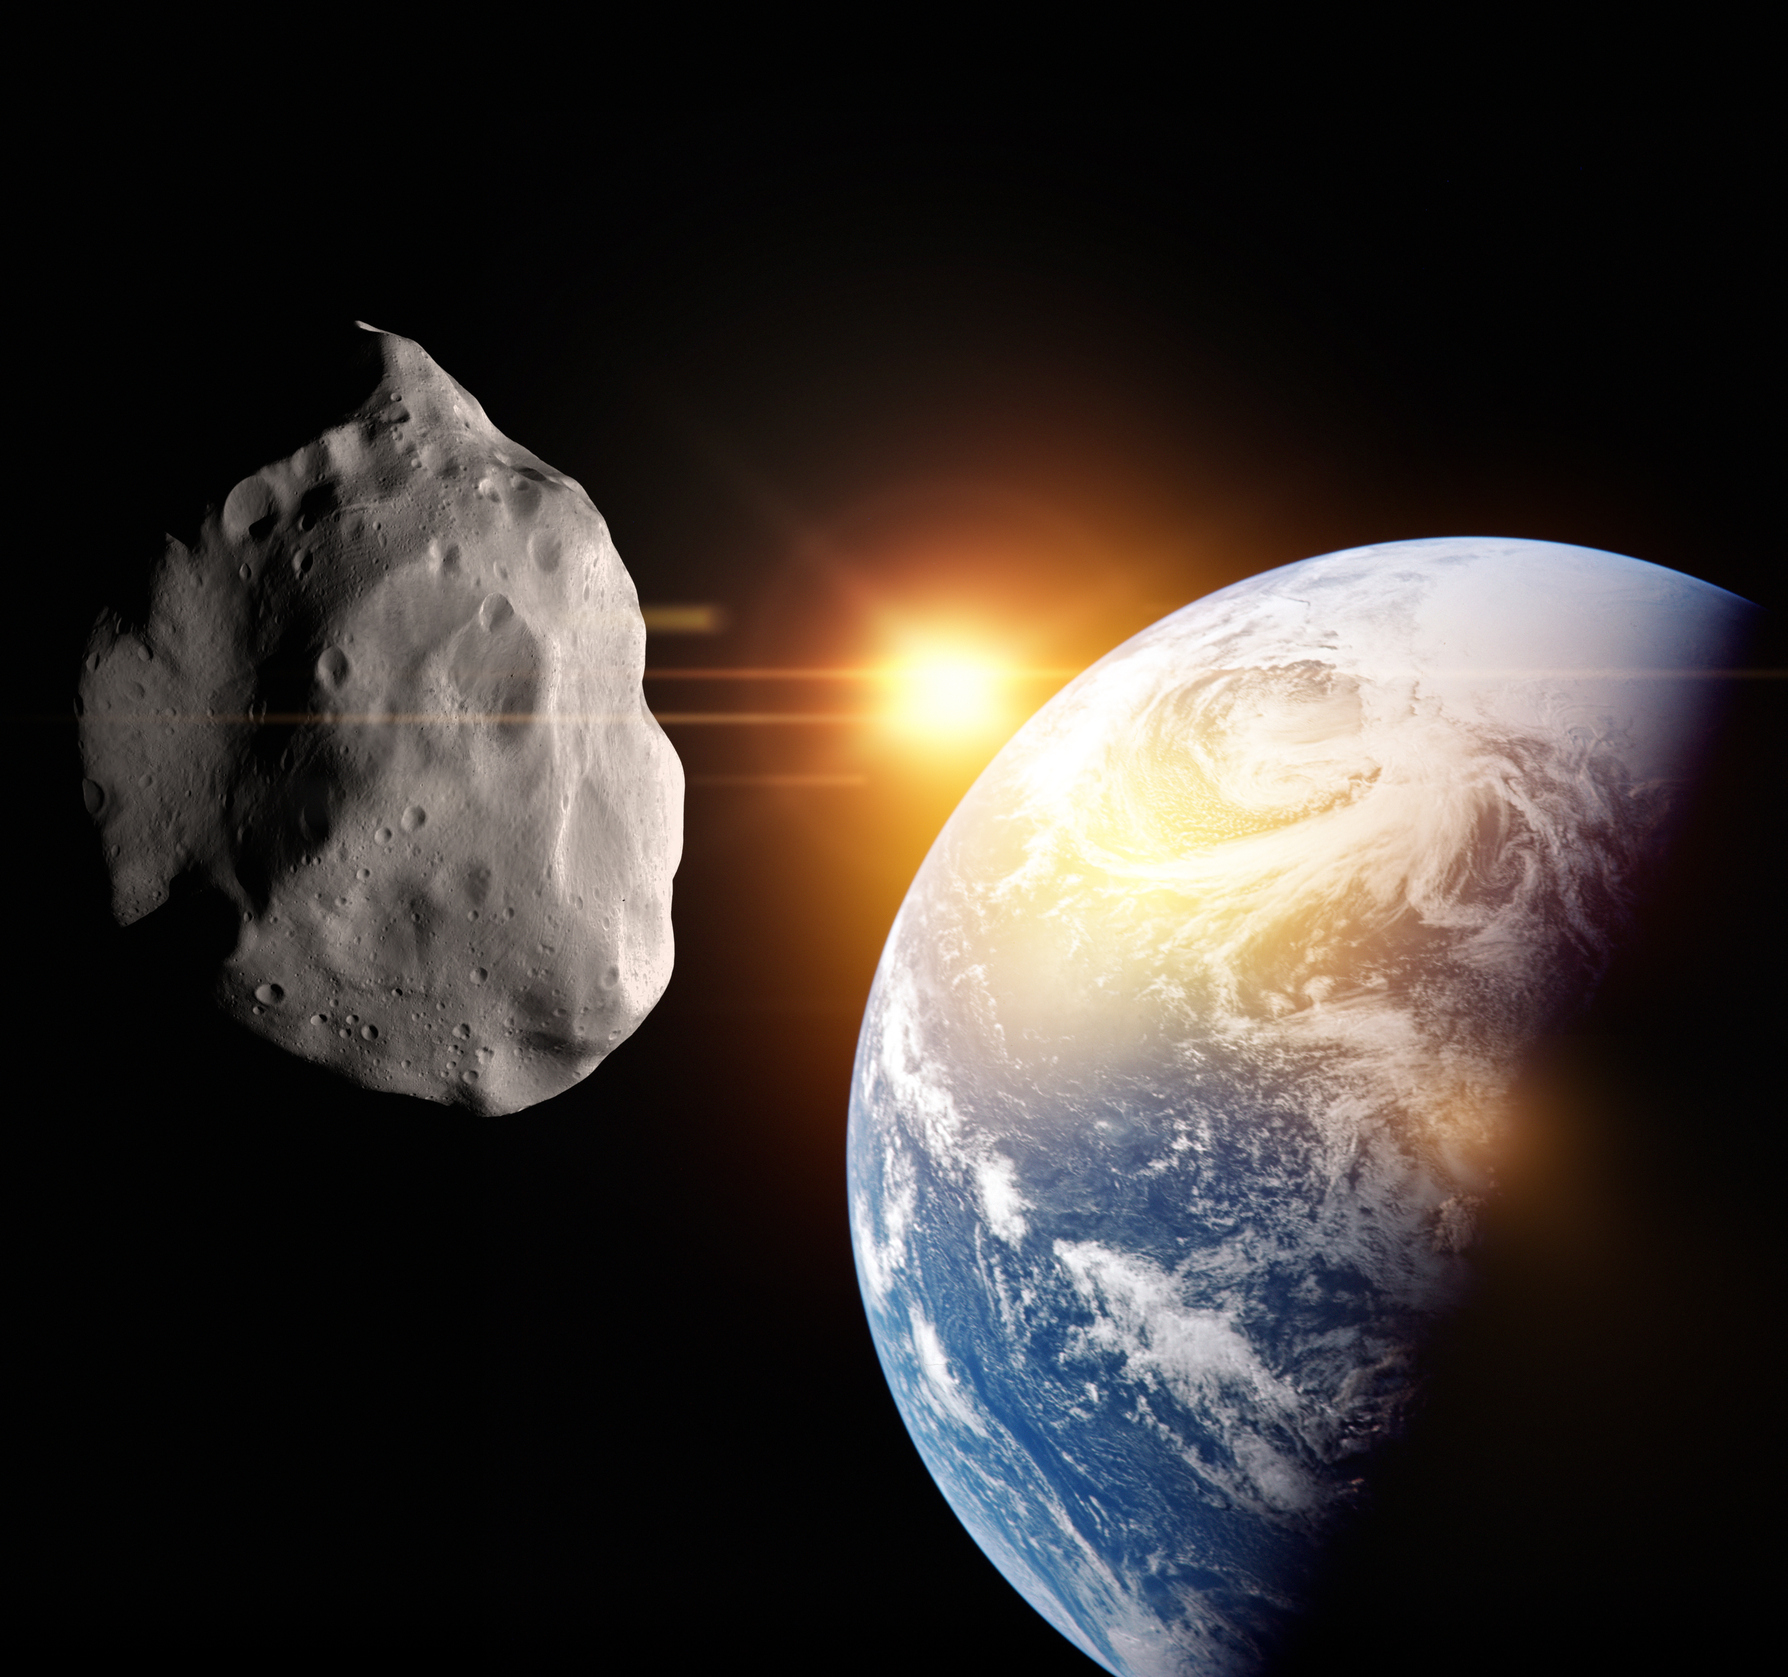 Links ein Asteroid, rechts die Erde. Im Hintergrund (mitte) klein die Sonne.